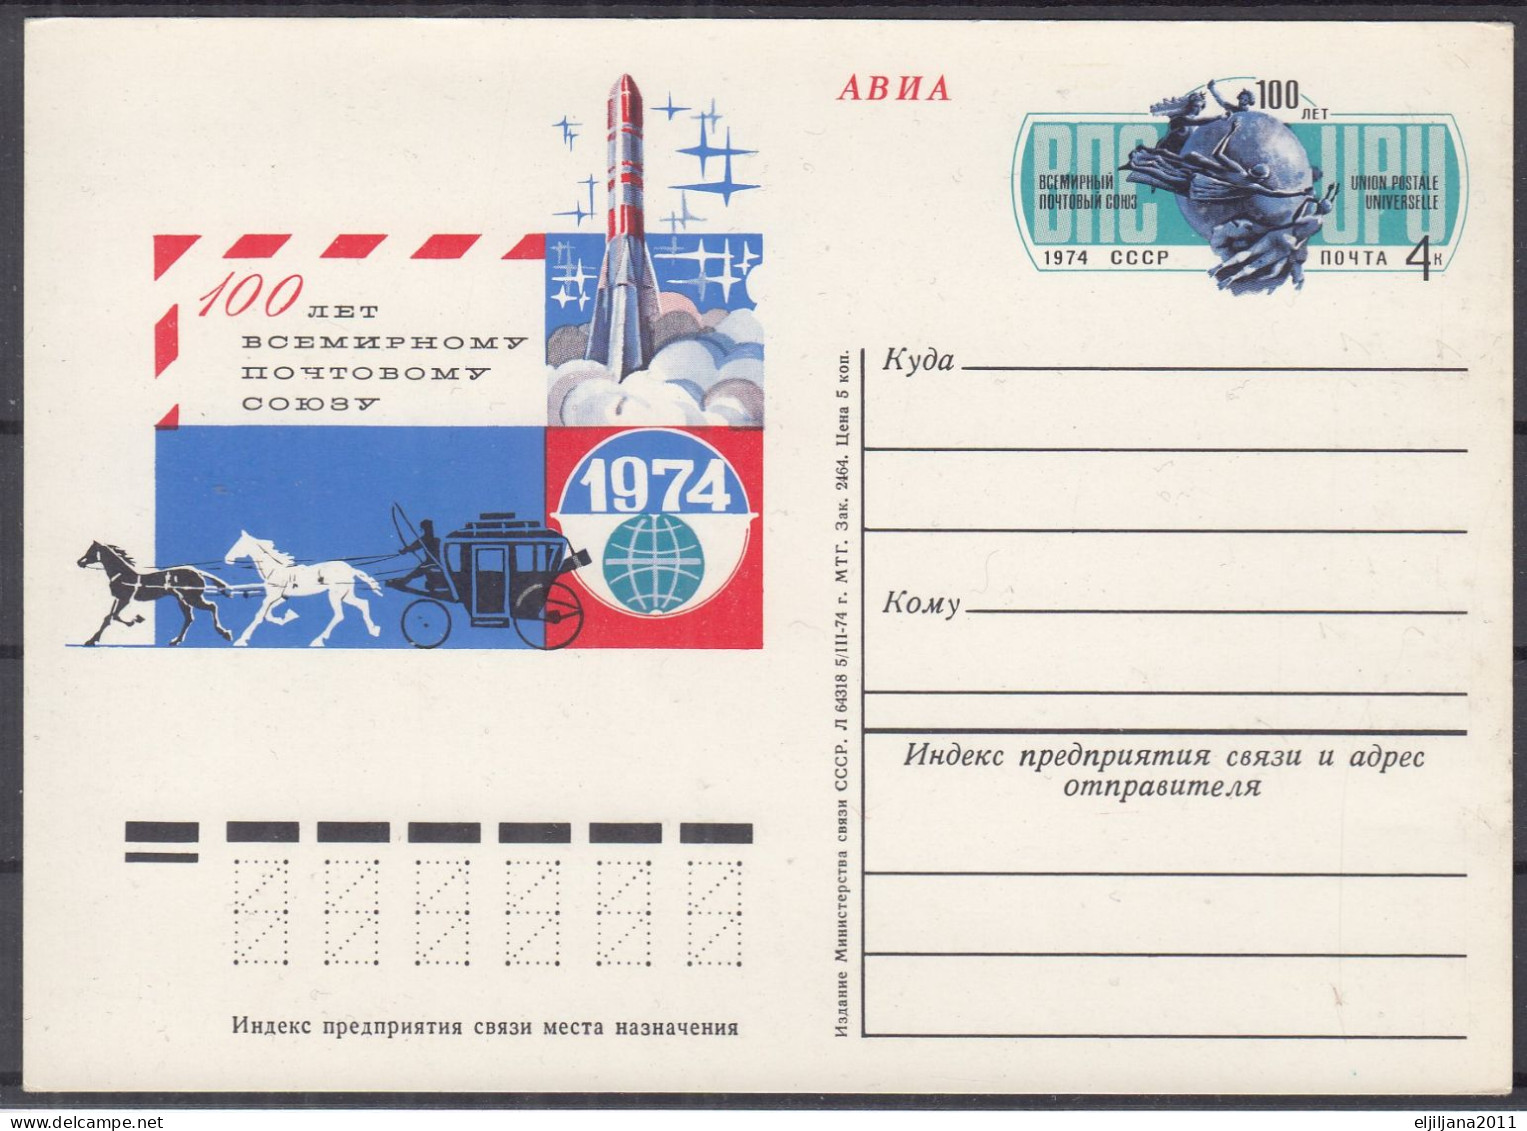 ⁕ Soviet Union - Russia 1974 UPU 100th ⁕ Unused Stationery Postcard - UPU (Universal Postal Union)